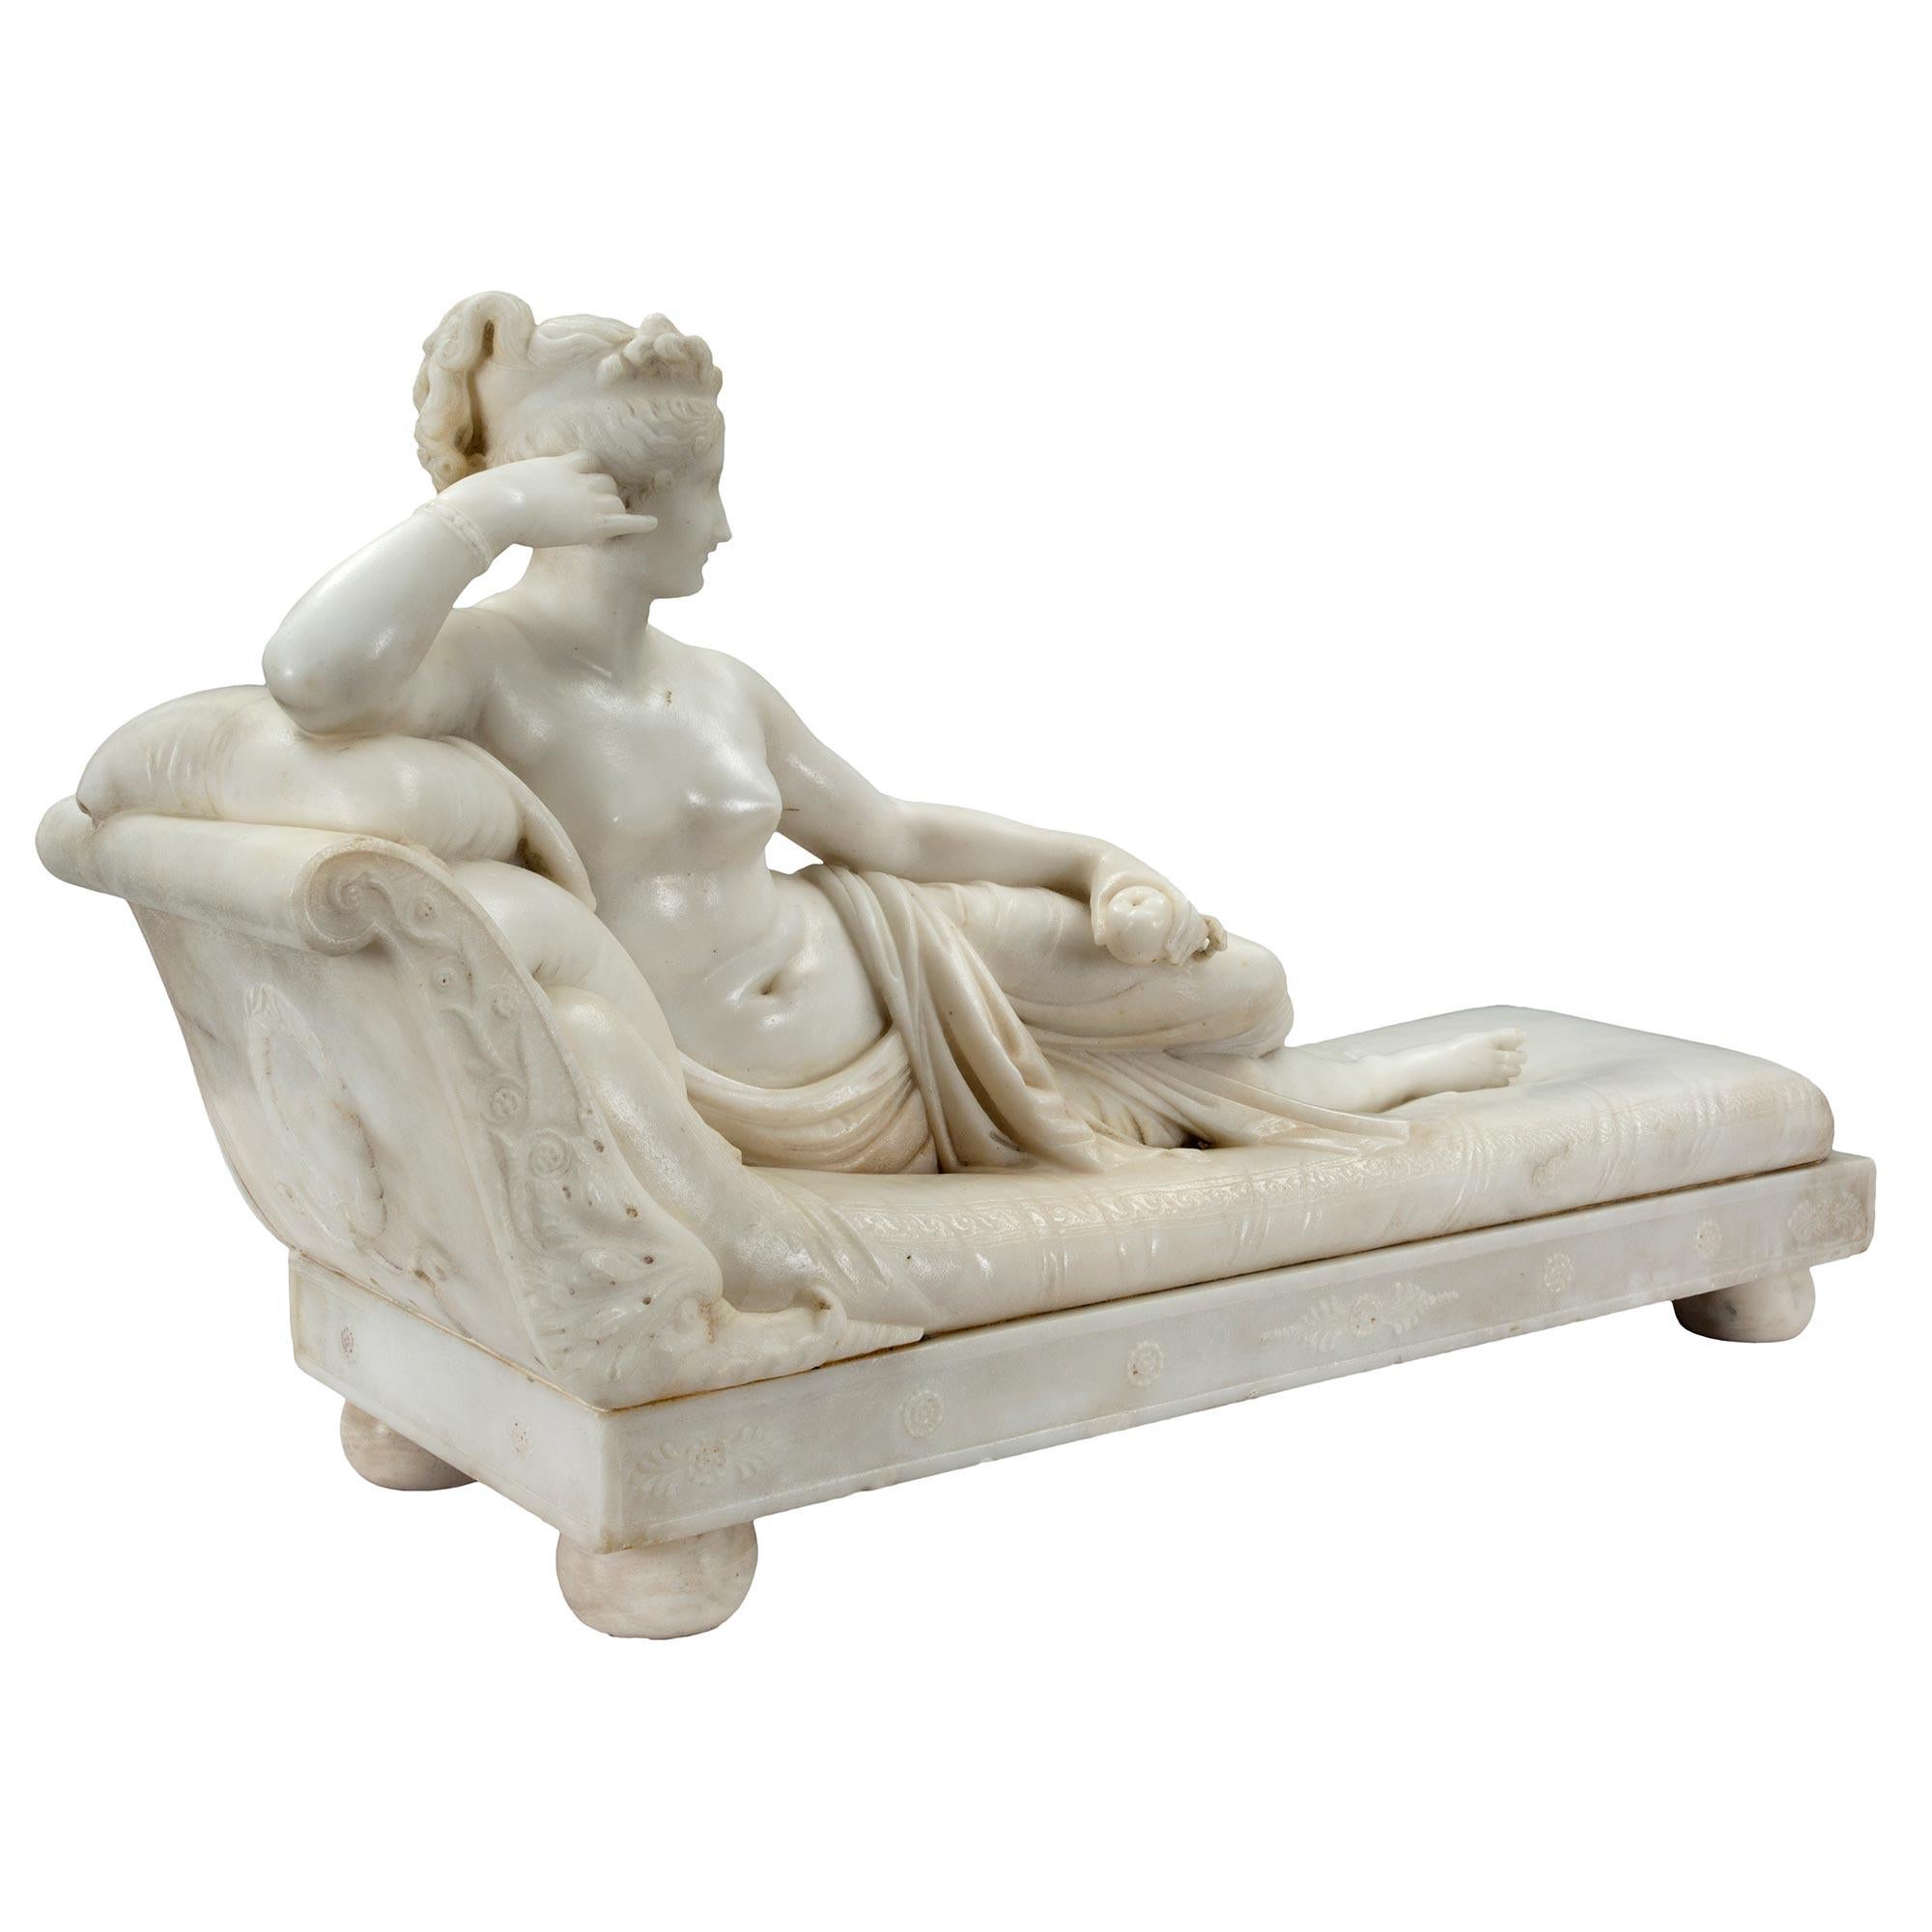 Une spectaculaire sculpture italienne néoclassique du XIXe siècle en marbre blanc de carrare représentant Paulina Bonaparte, signée par Carlo Fossi. Paulina était la sœur de l'empereur Napoléon et est sculptée allongée sur son lit. Modelé d'après